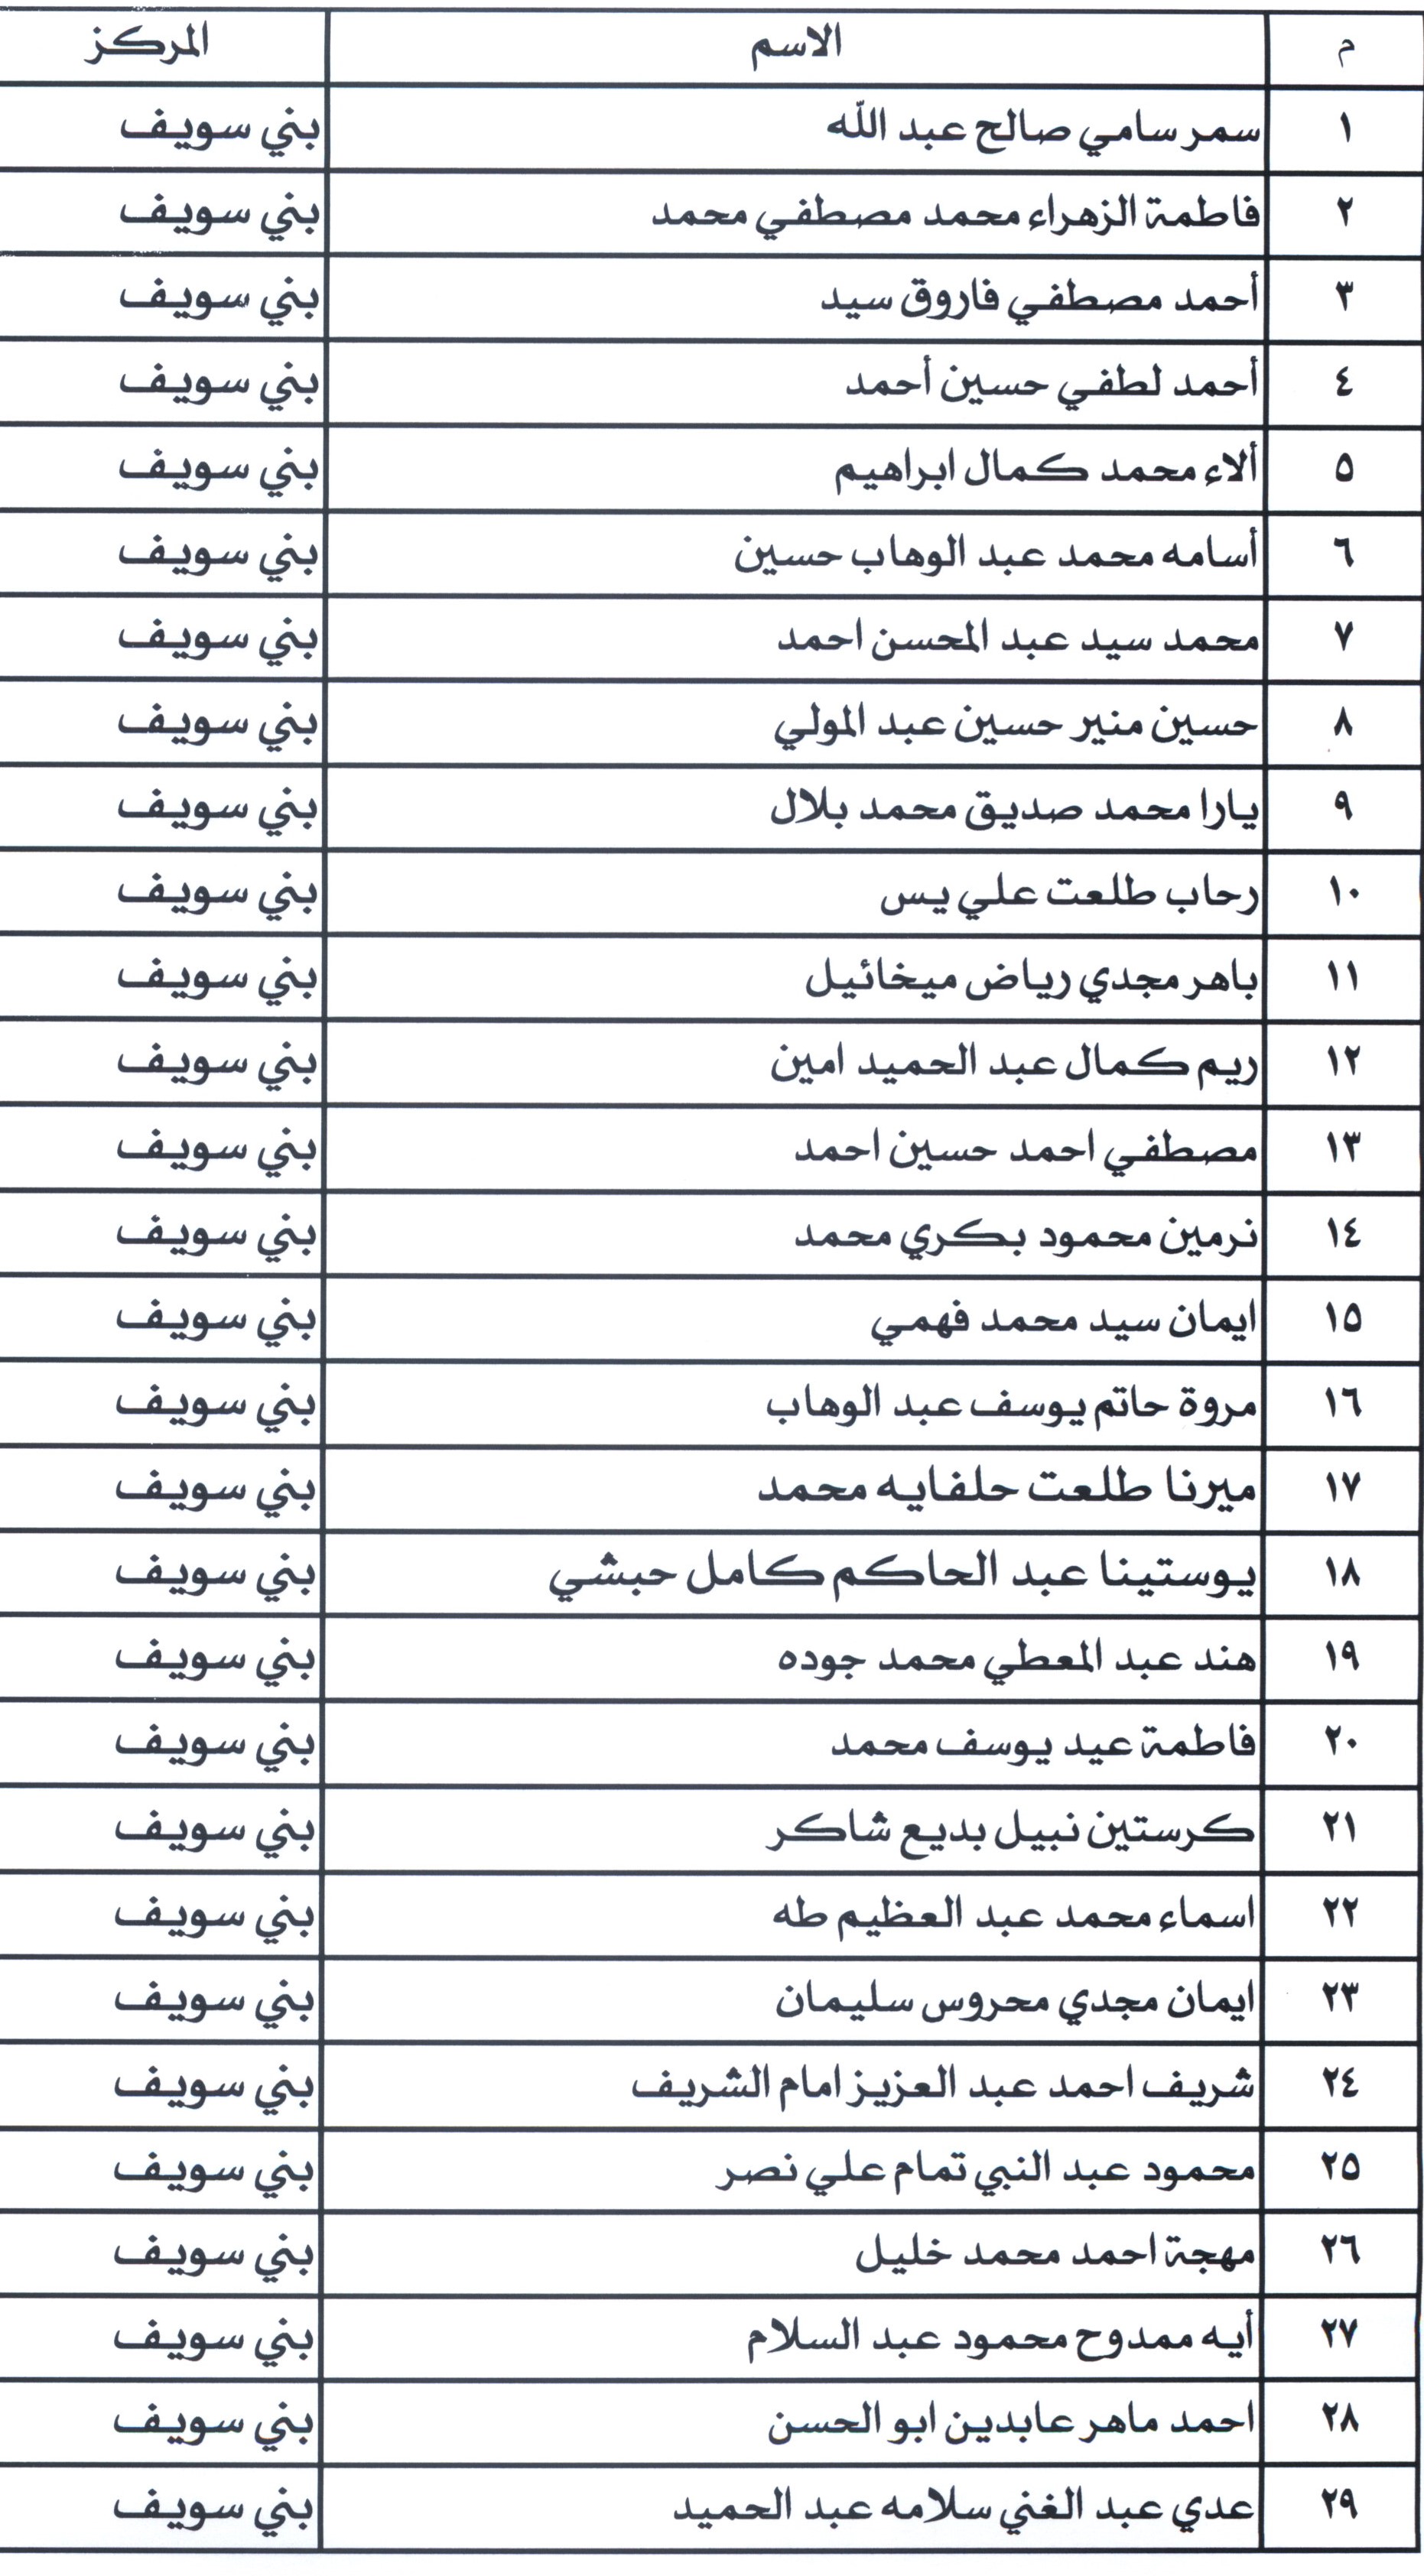 أسماء مرشحى شغل الوظائف ببمحافظة بنى سويف (3)